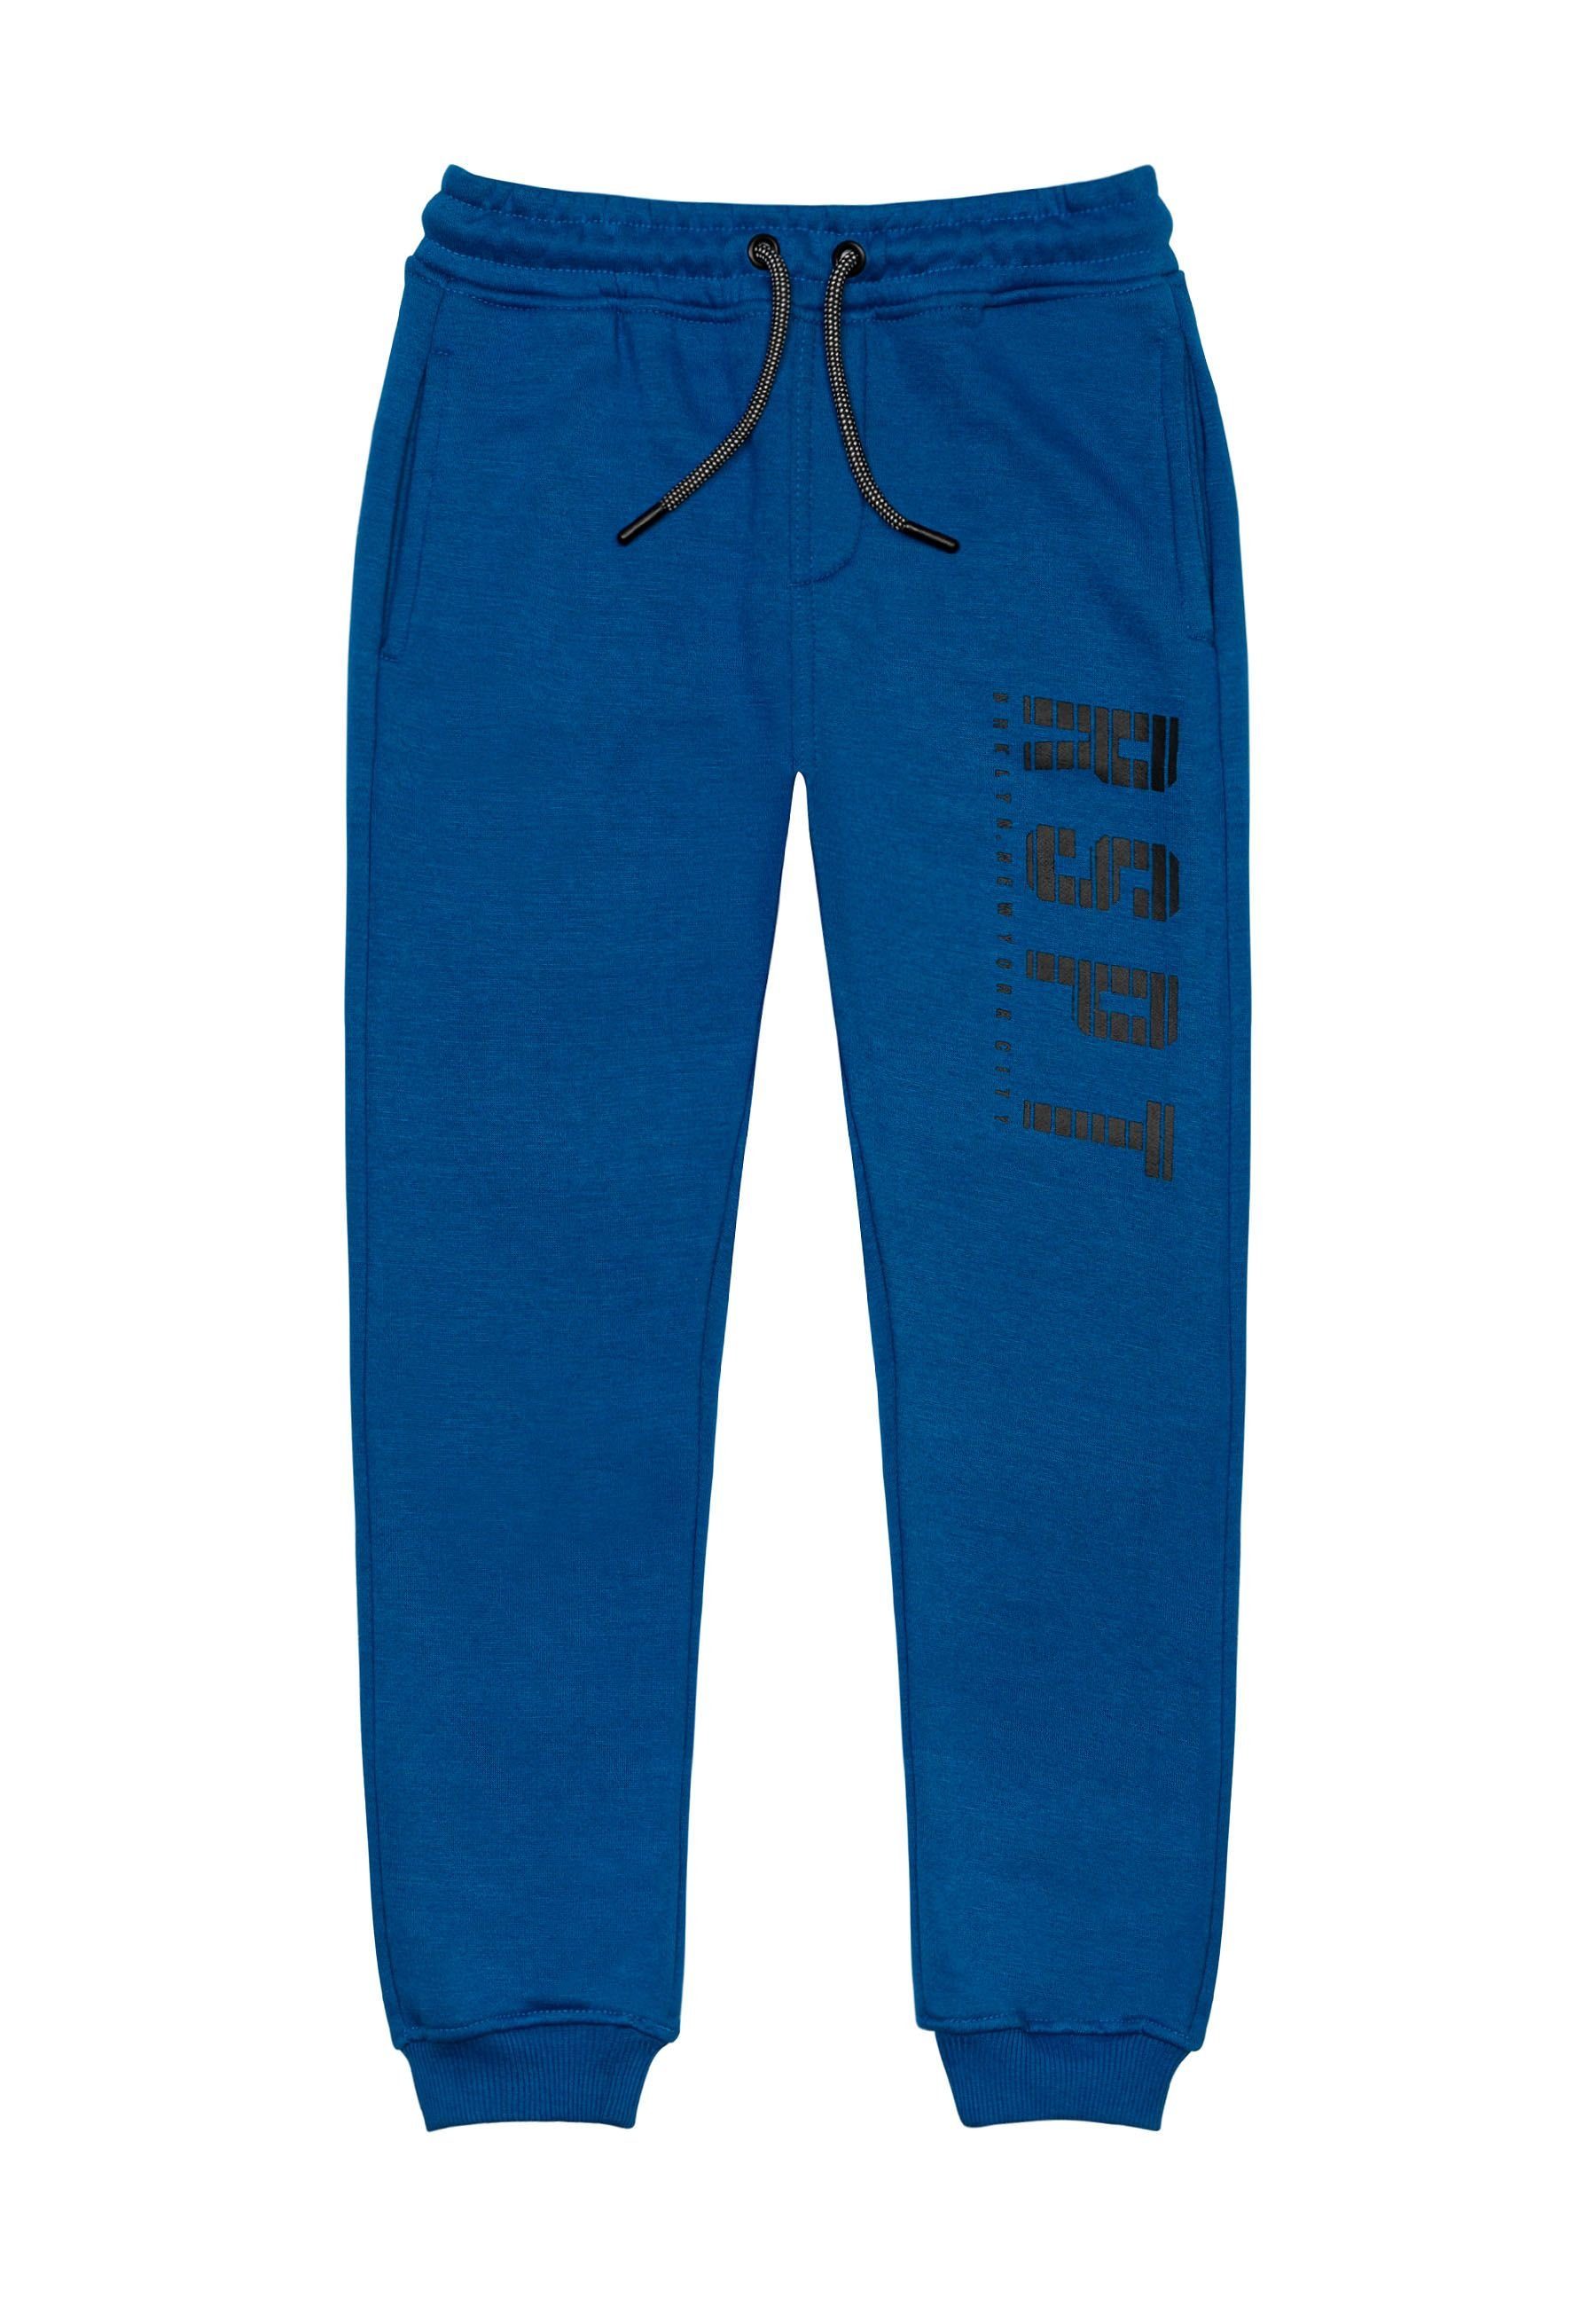 MINOTI Jogger Pants Jogginghose (1y-14y) Blau